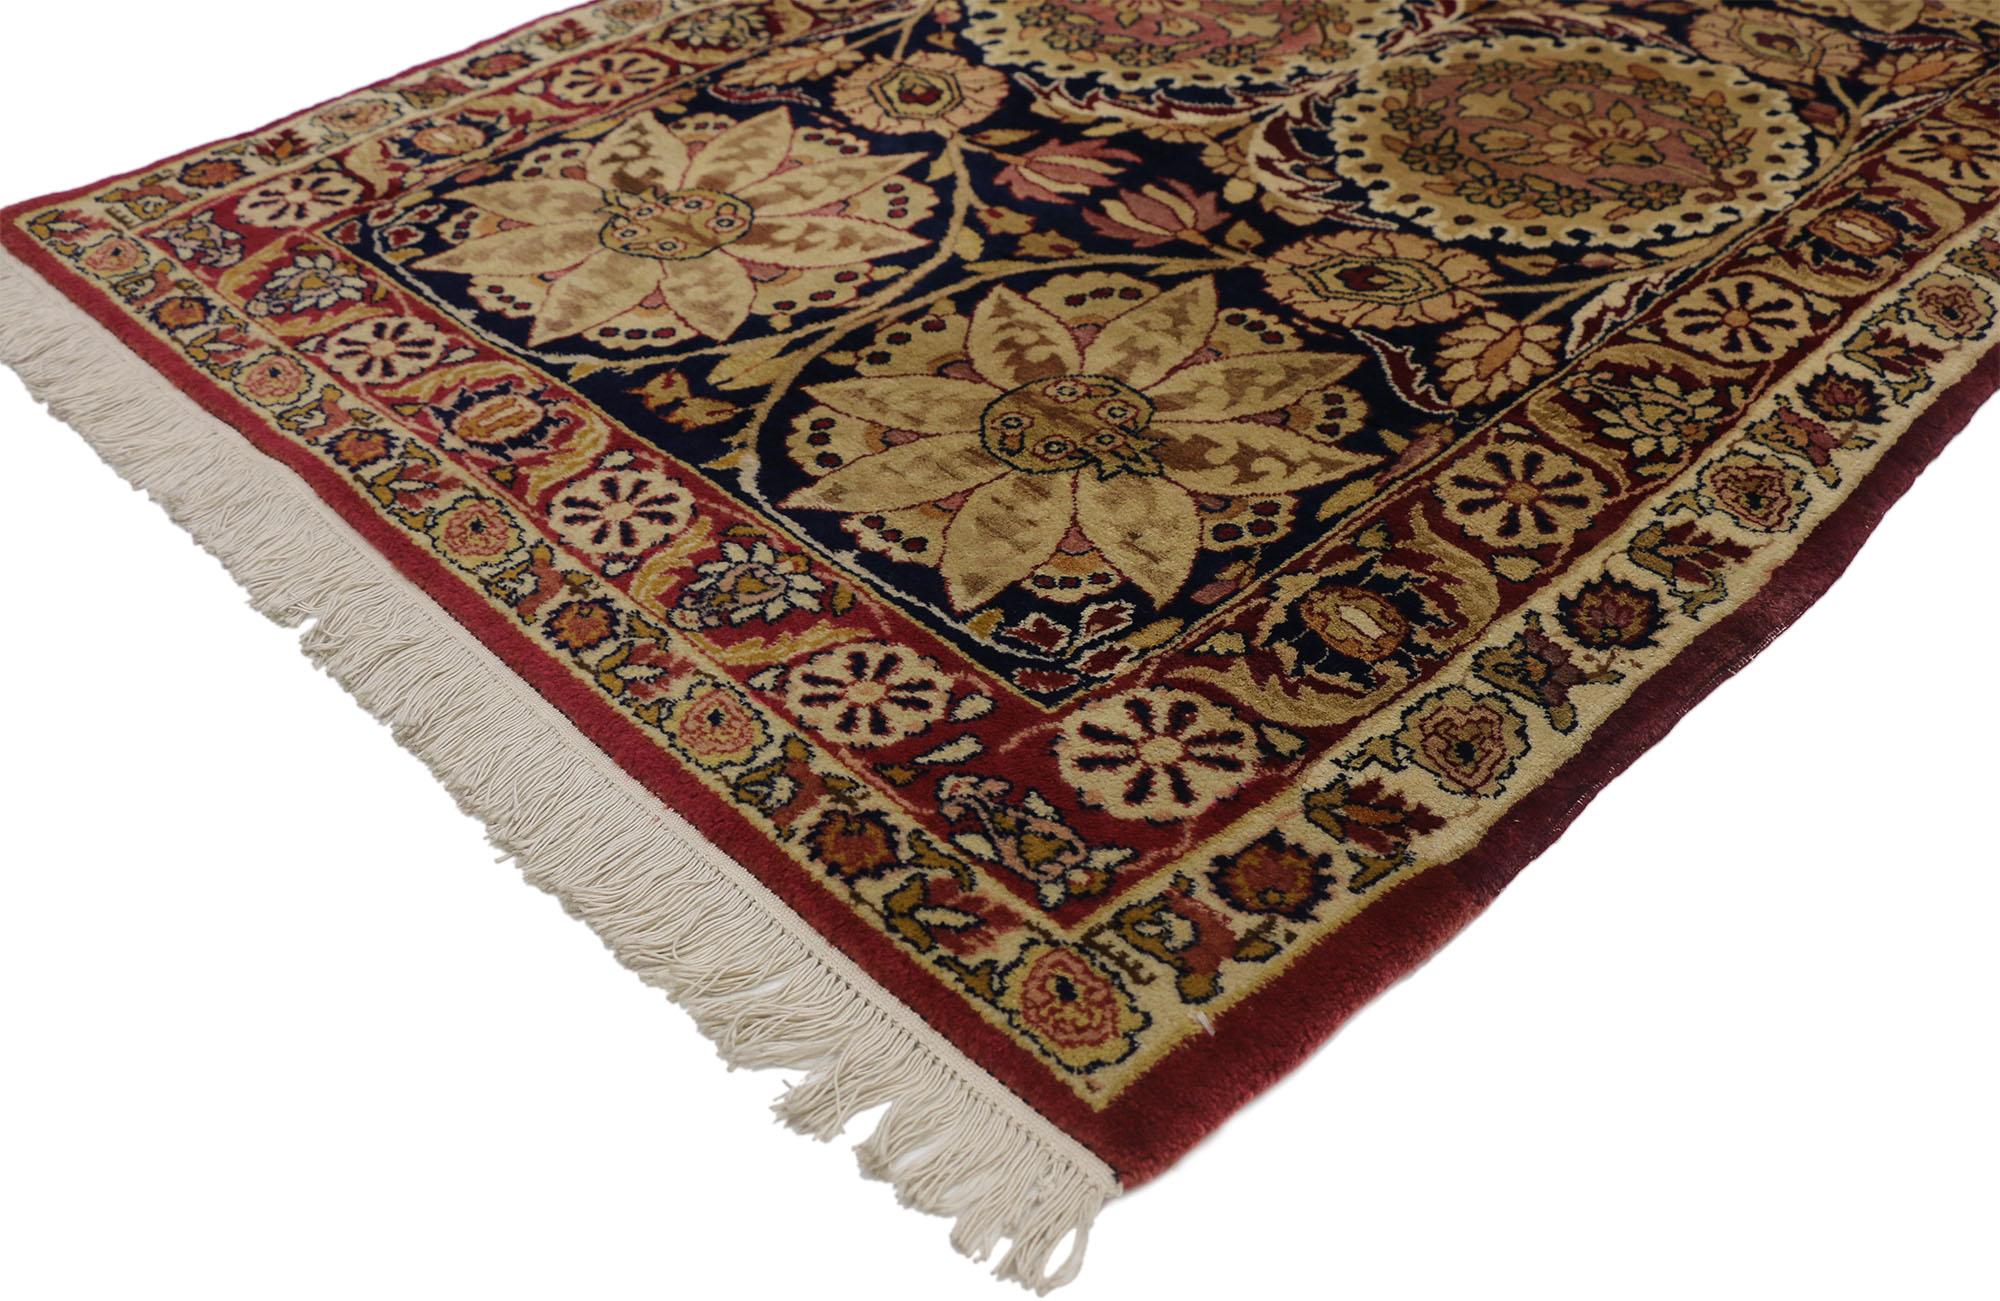 73285, antiker persischer Kermanshah-Teppich im traditionellen Stil. Dieser exquisite Teppich zeigt zwei Reihen von Medaillons mit abwechselnden Lotusblüten in Rosa-Lavendel, Salbei, Burgunderrot und Creme auf einem Feld in tiefem Saphirblau. Der